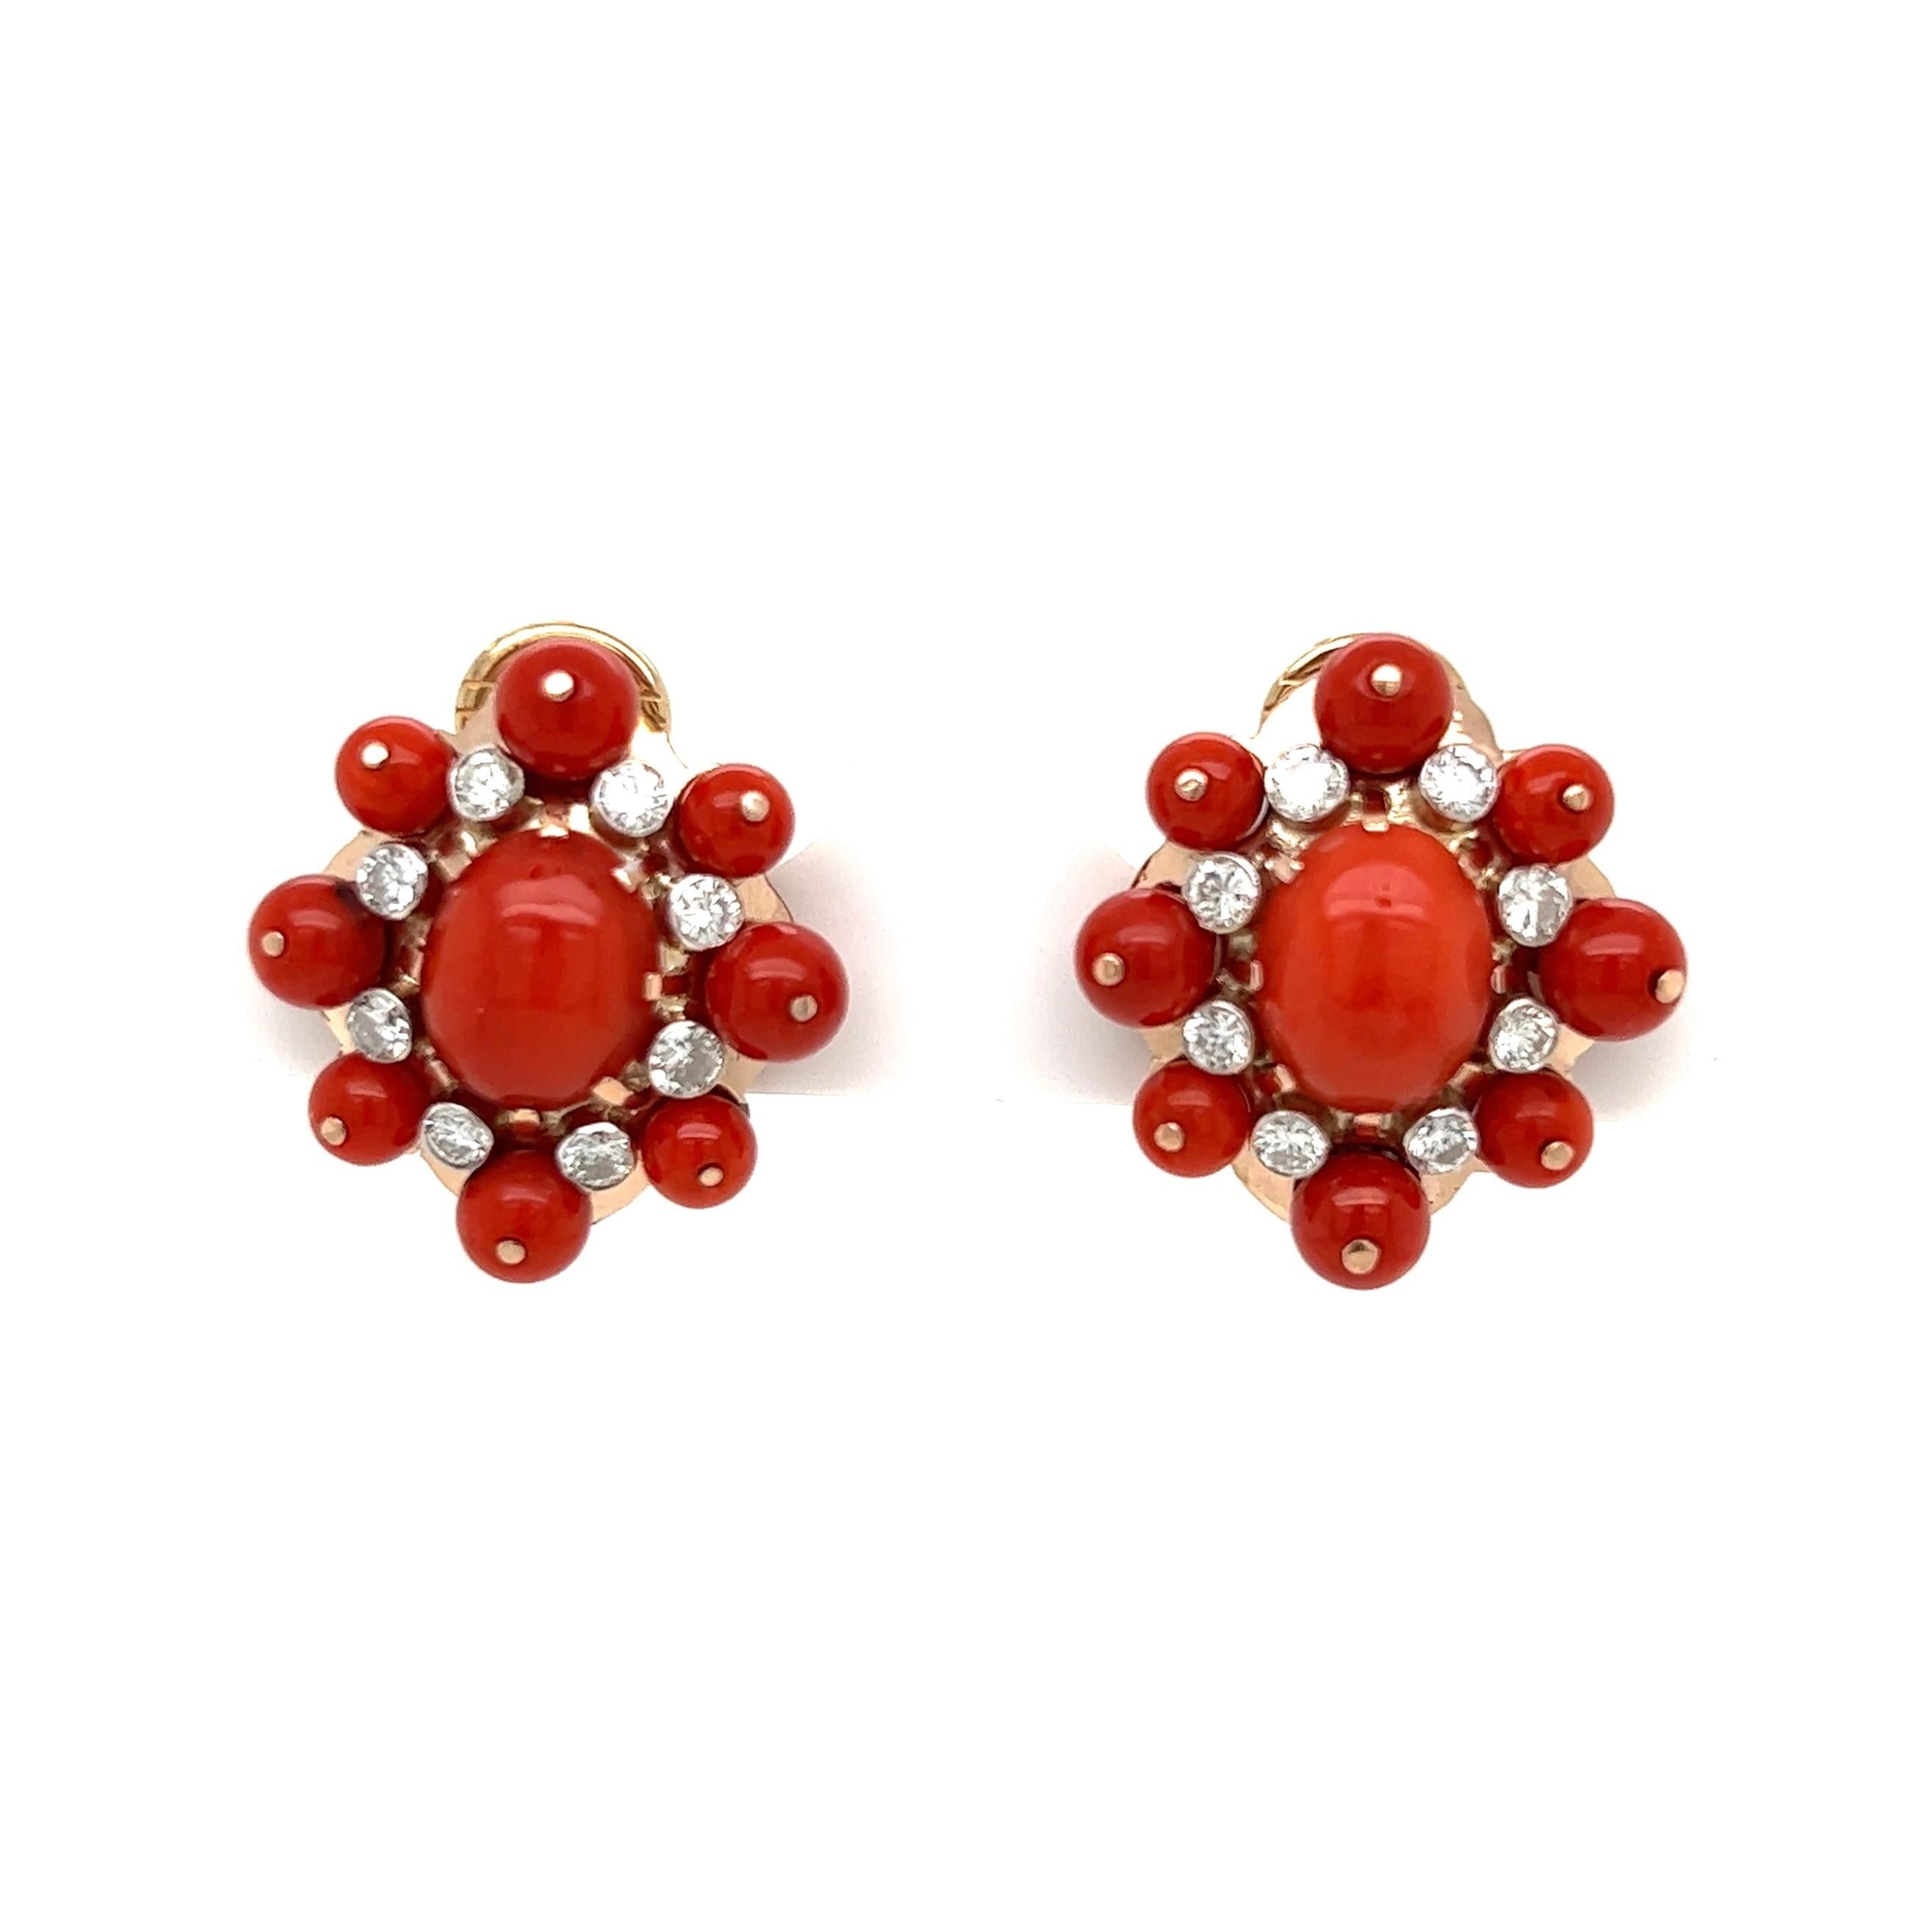 Einfach schön! Hochwertige rote Korallen- und Diamant-Cluster-Ohrringe. Hand gesetzt mit Awesome Red Coral und 16 Runde Brilliant-Cut Diamanten, ca. 1,12tcw Abmessungen 0,88